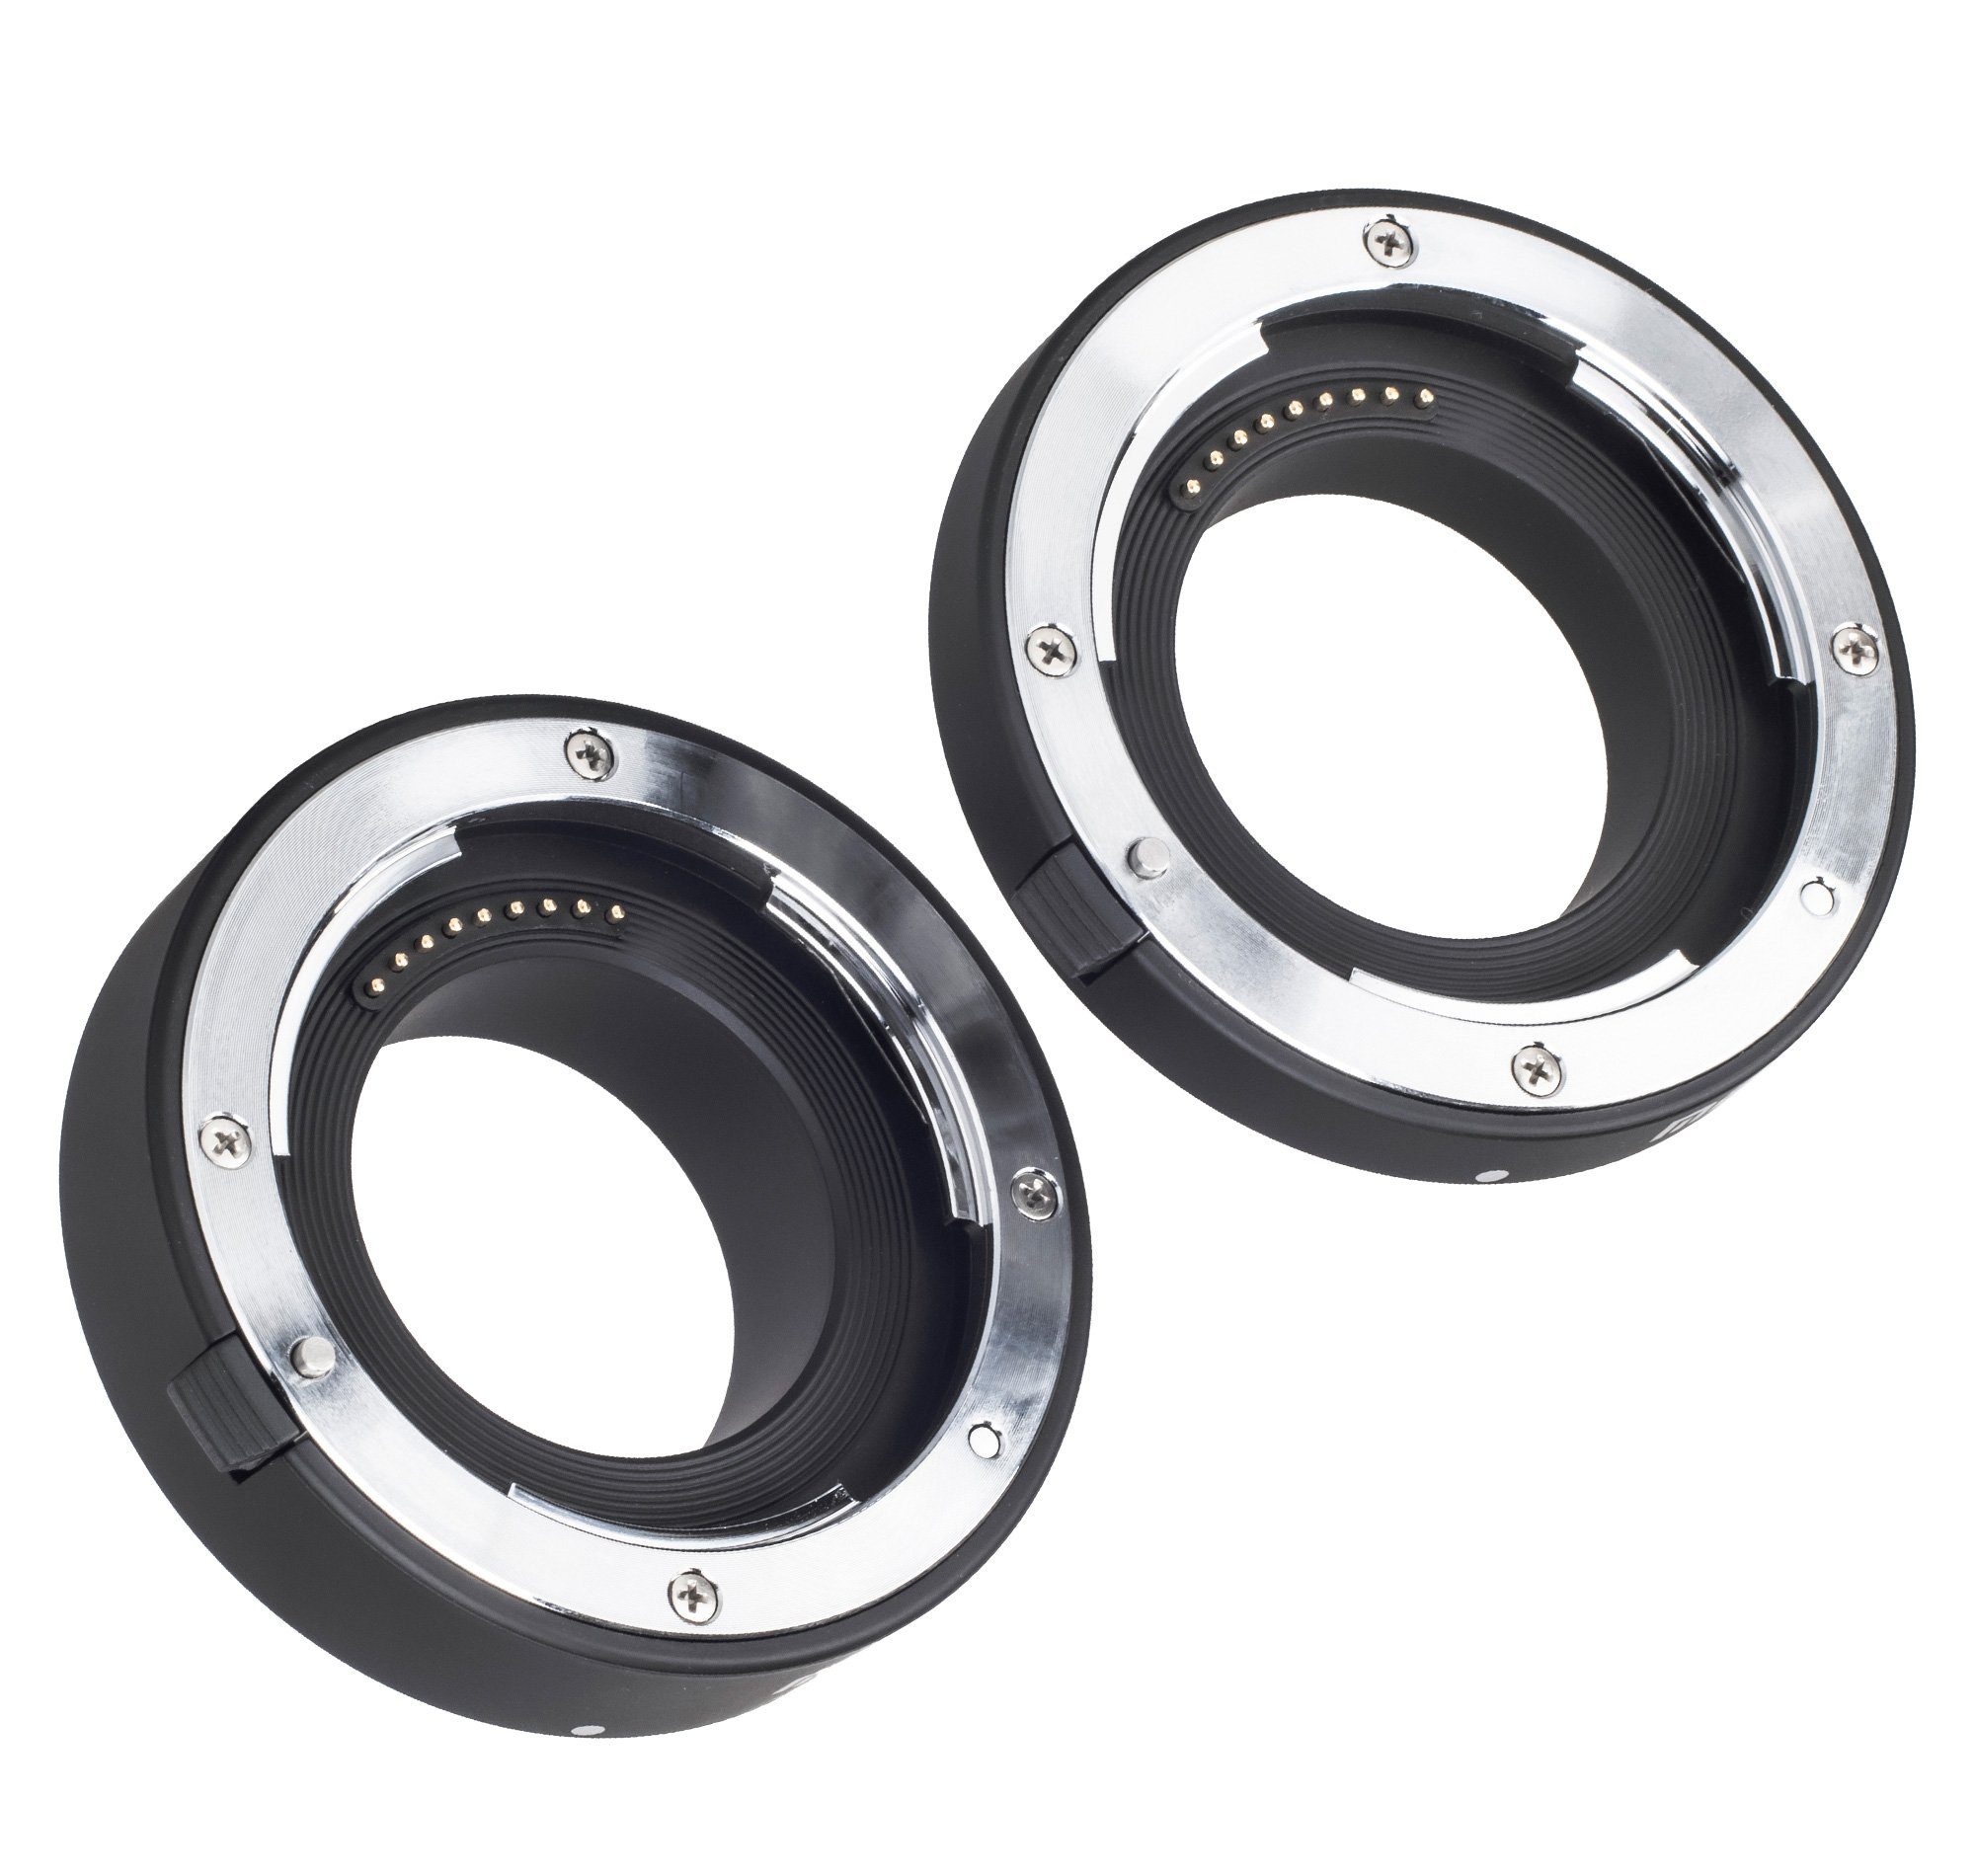 Canon EOS Systemkameras Zwischenringe M Automatik MK-C-AF3A Makro Makroobjektiv Meike für